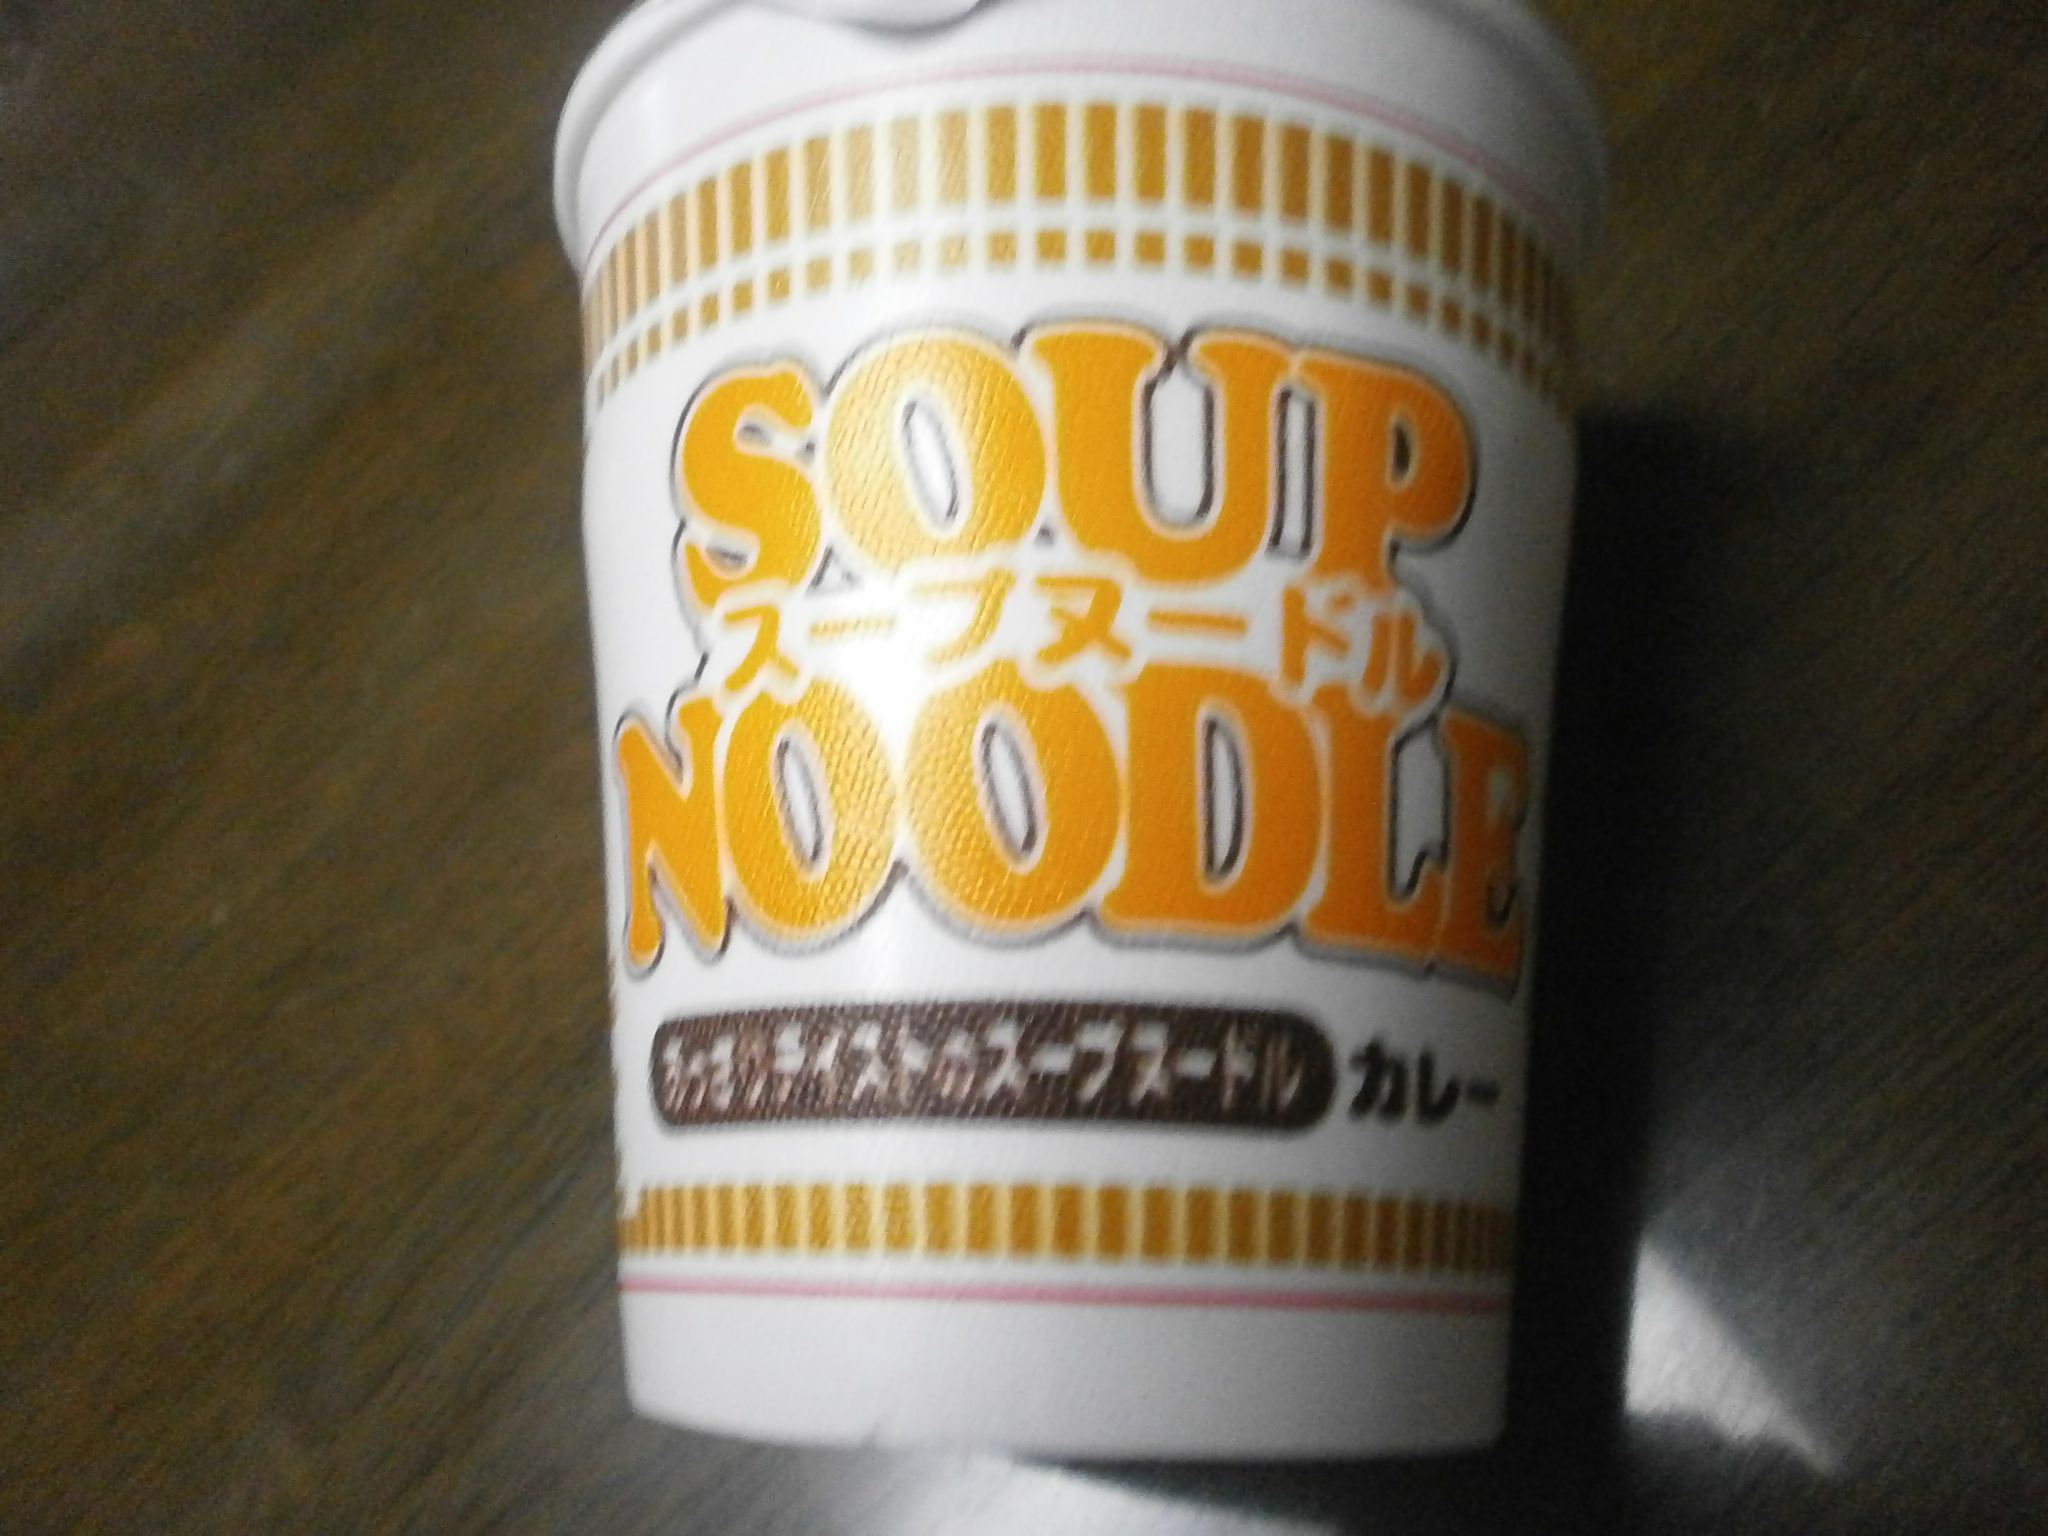 Which high-calorie? Noodle Soup (Curry)? Noodle soup (seafood)?